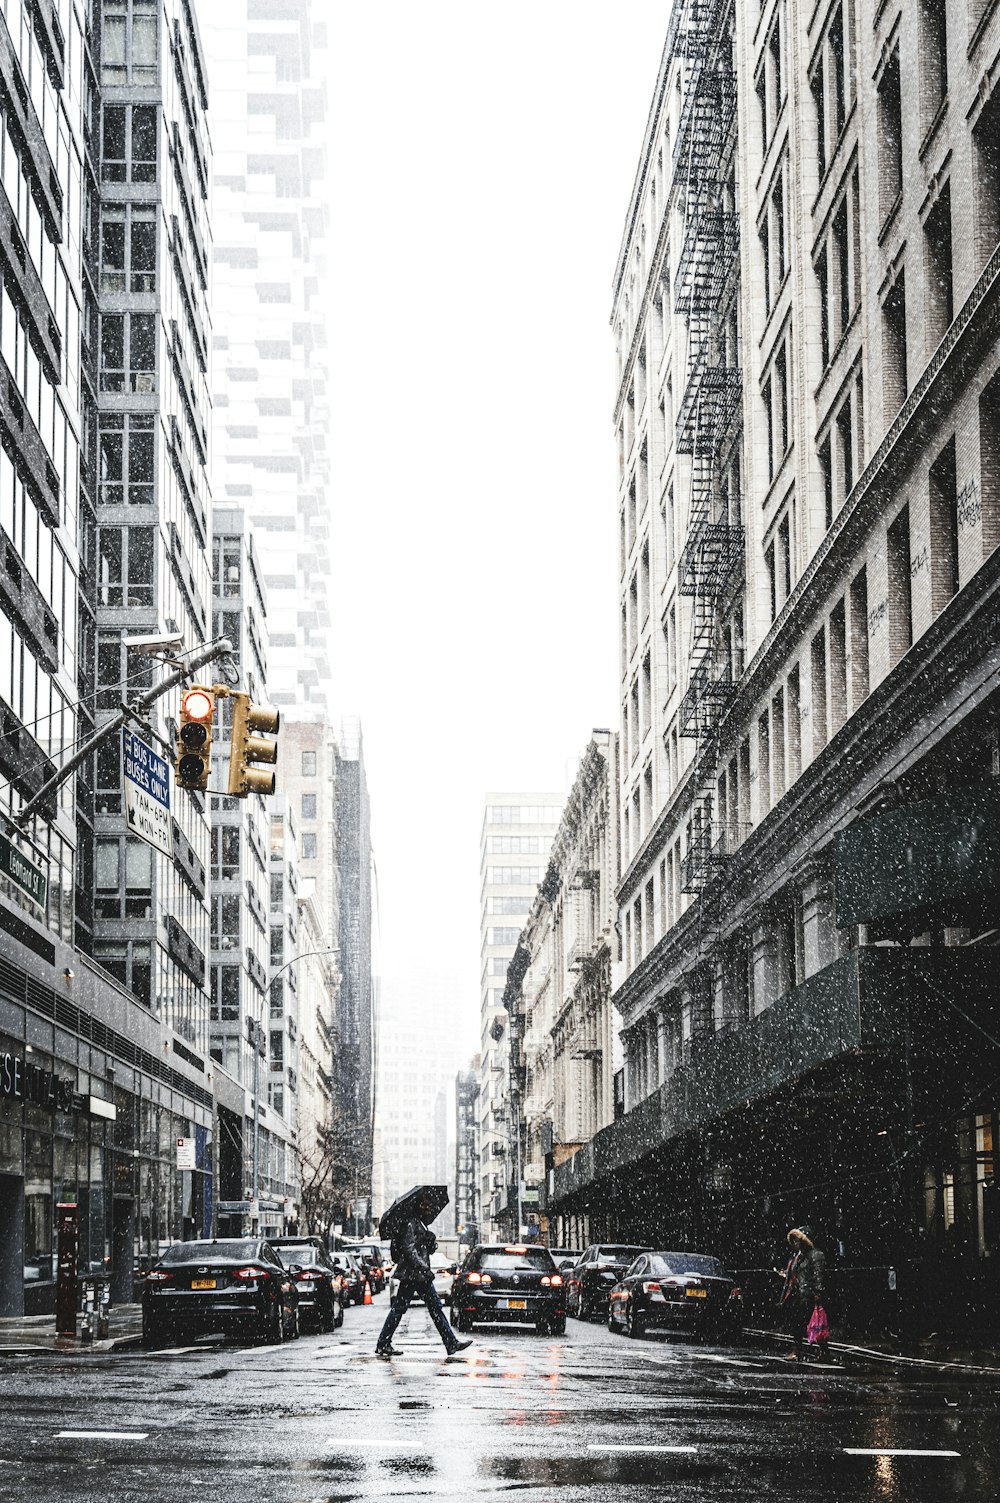 uma pessoa com um guarda-chuva atravessando uma rua na chuva